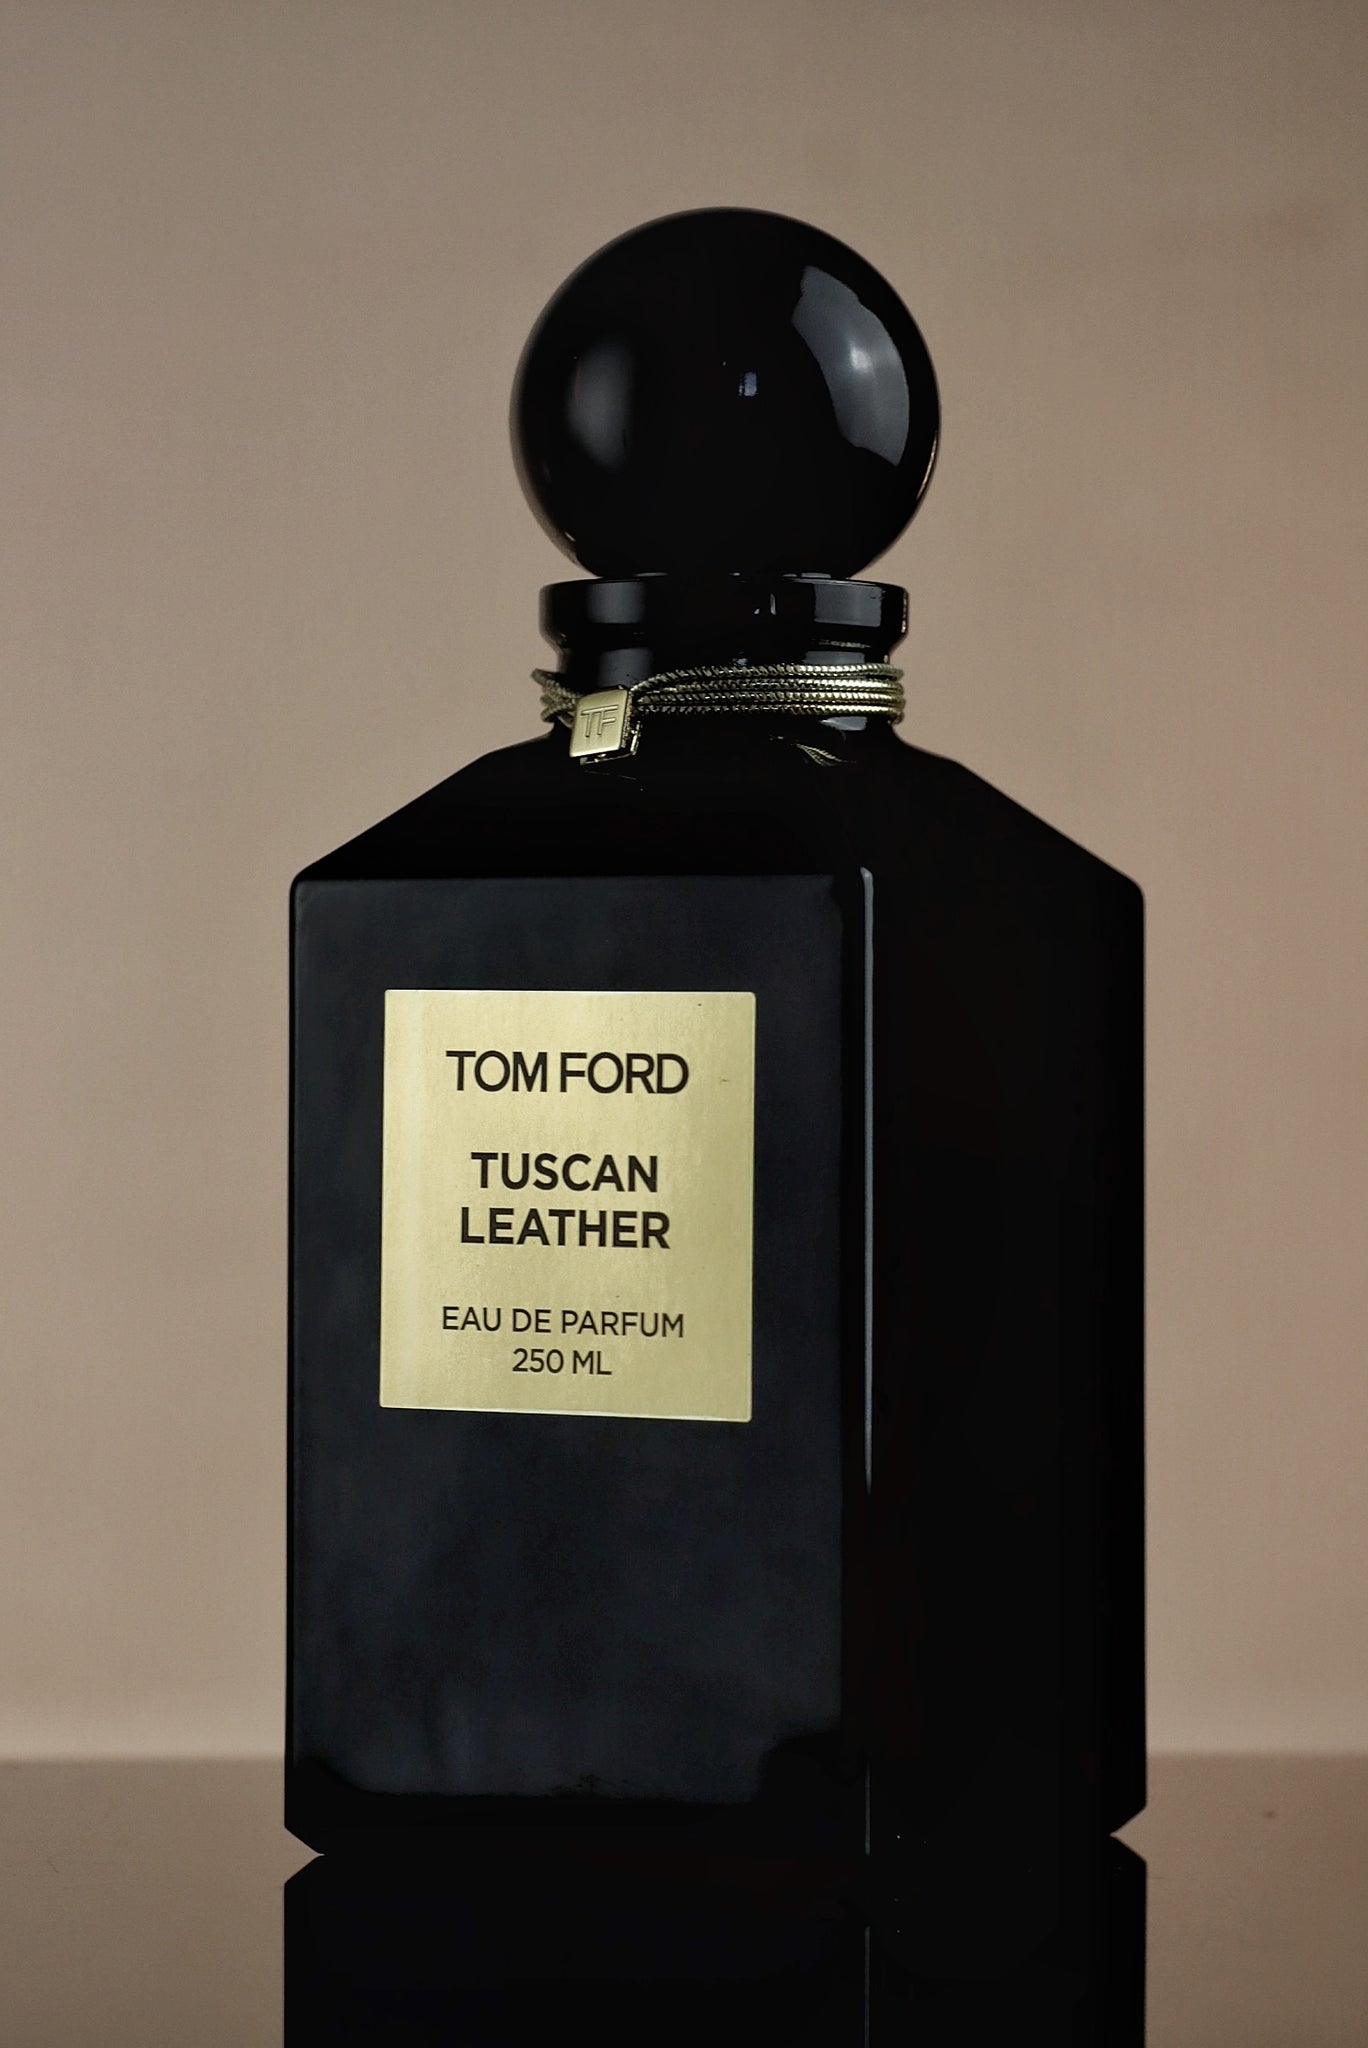 Leather Tuscan Tom Ford Online | website.jkuat.ac.ke